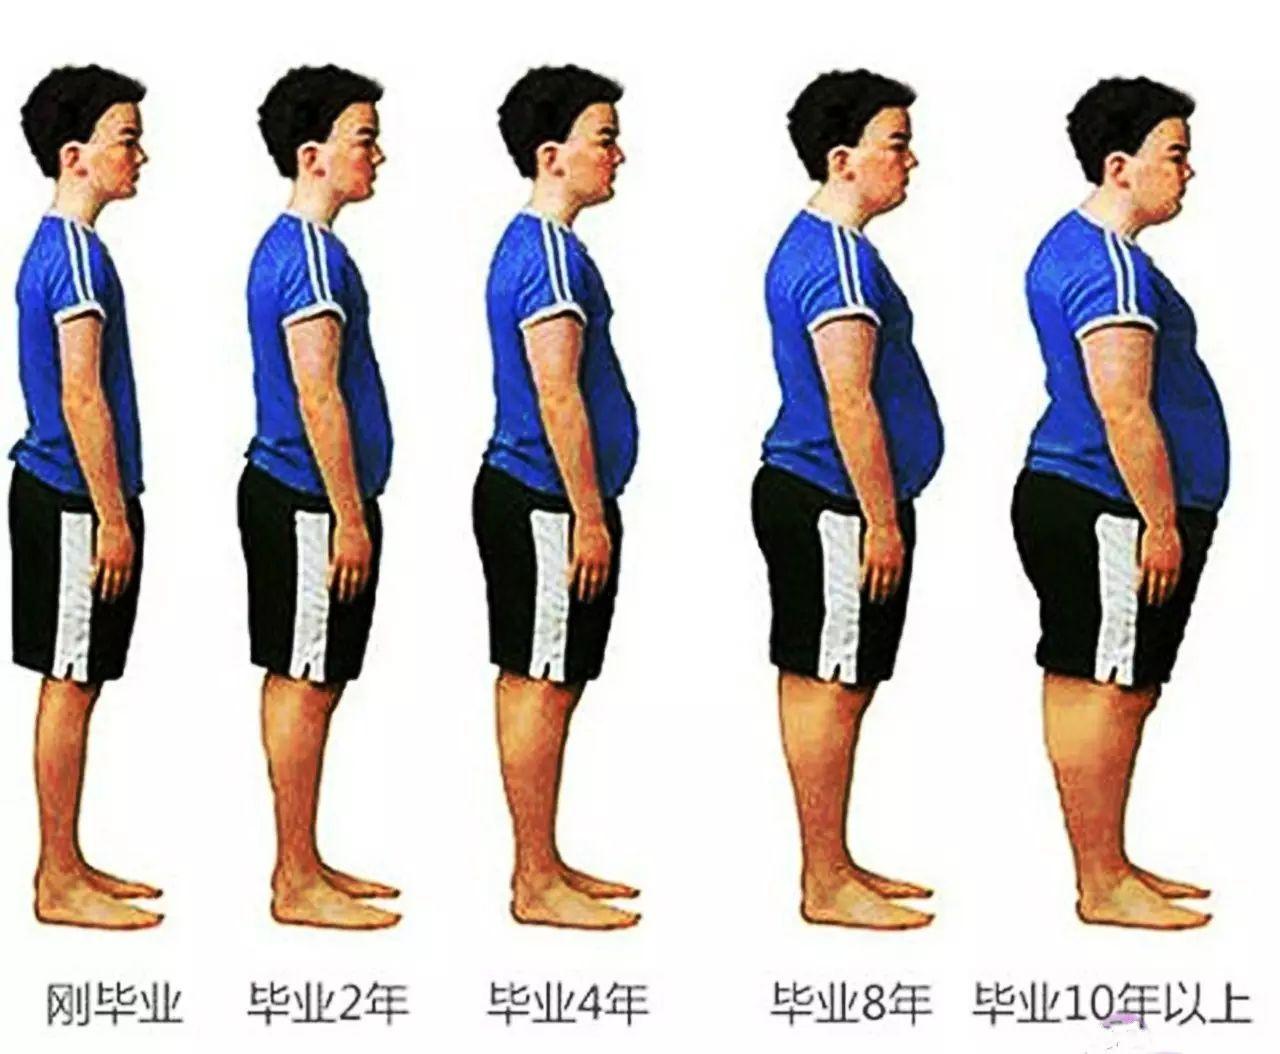 世界最胖的男孩體重380斤，減肥166斤後變成小帥哥 - PEEKME